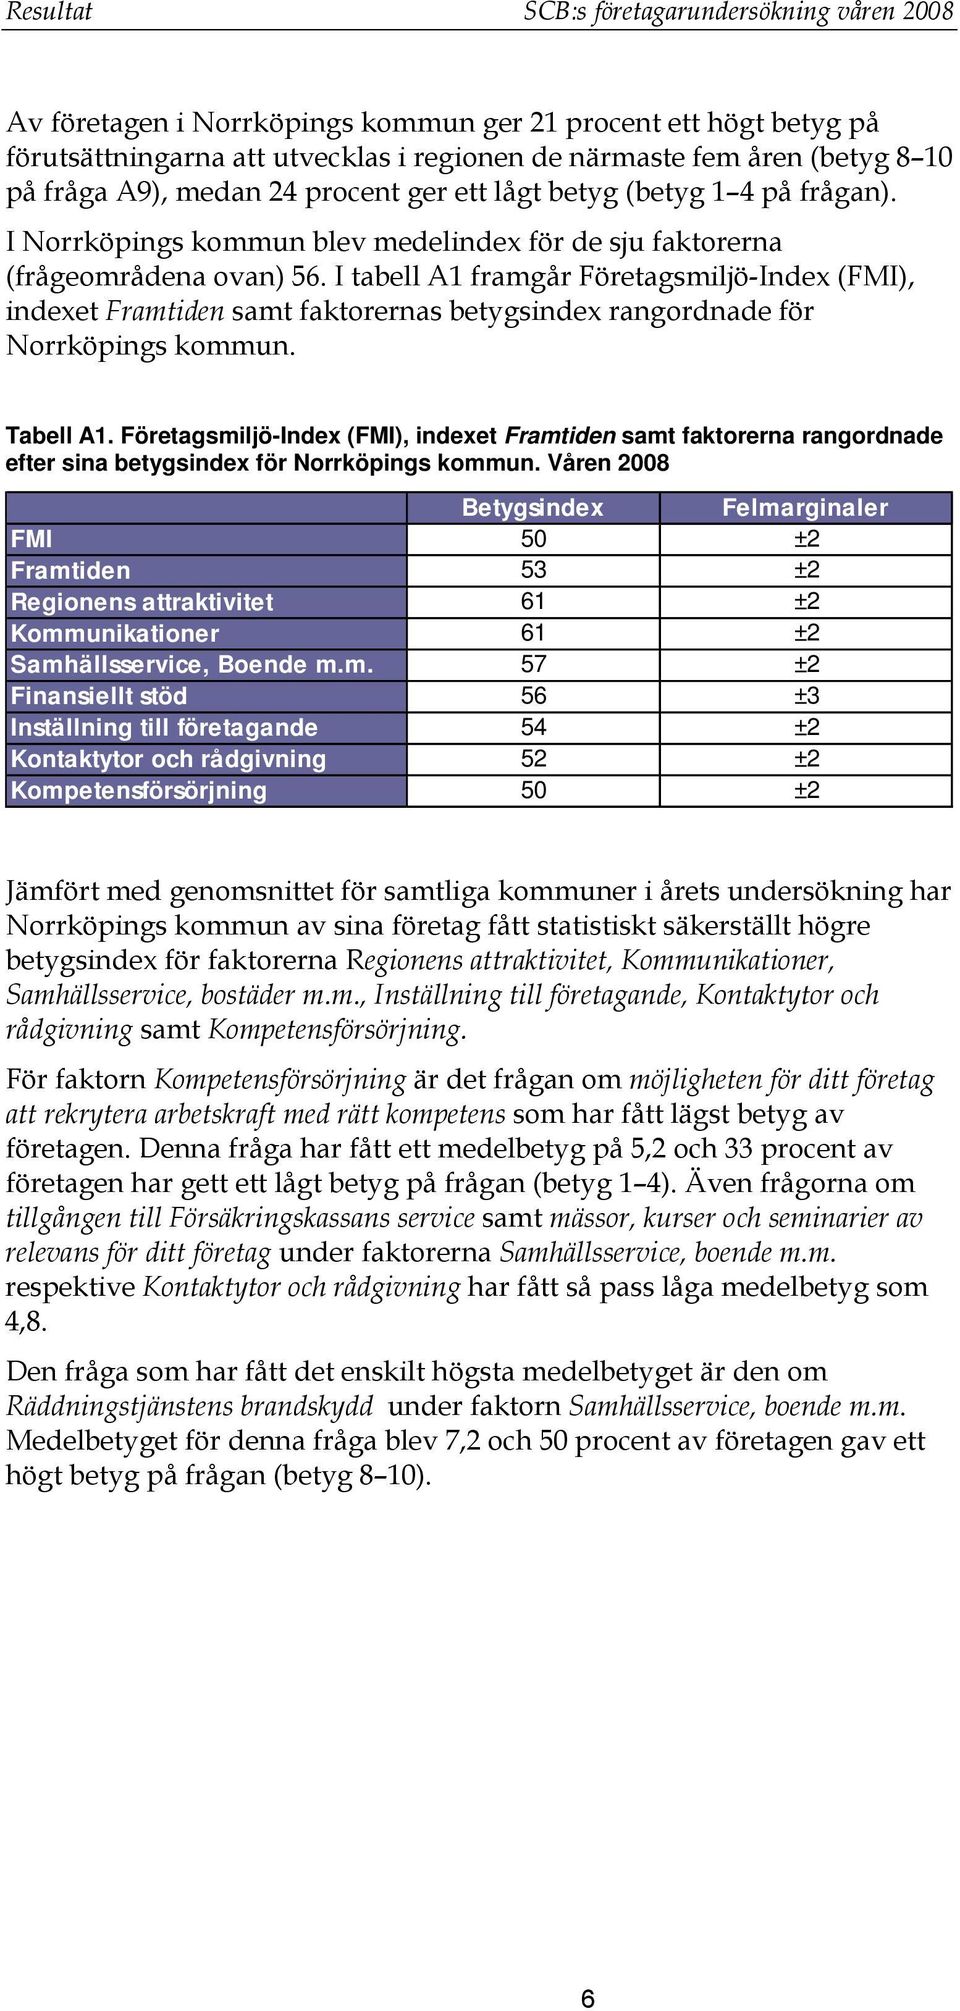 I tabell A1 framgår Företagsmiljö-Index (FMI), indexet Framtiden samt faktorernas betygsindex rangordnade för Norrköpings kommun. Tabell A1.